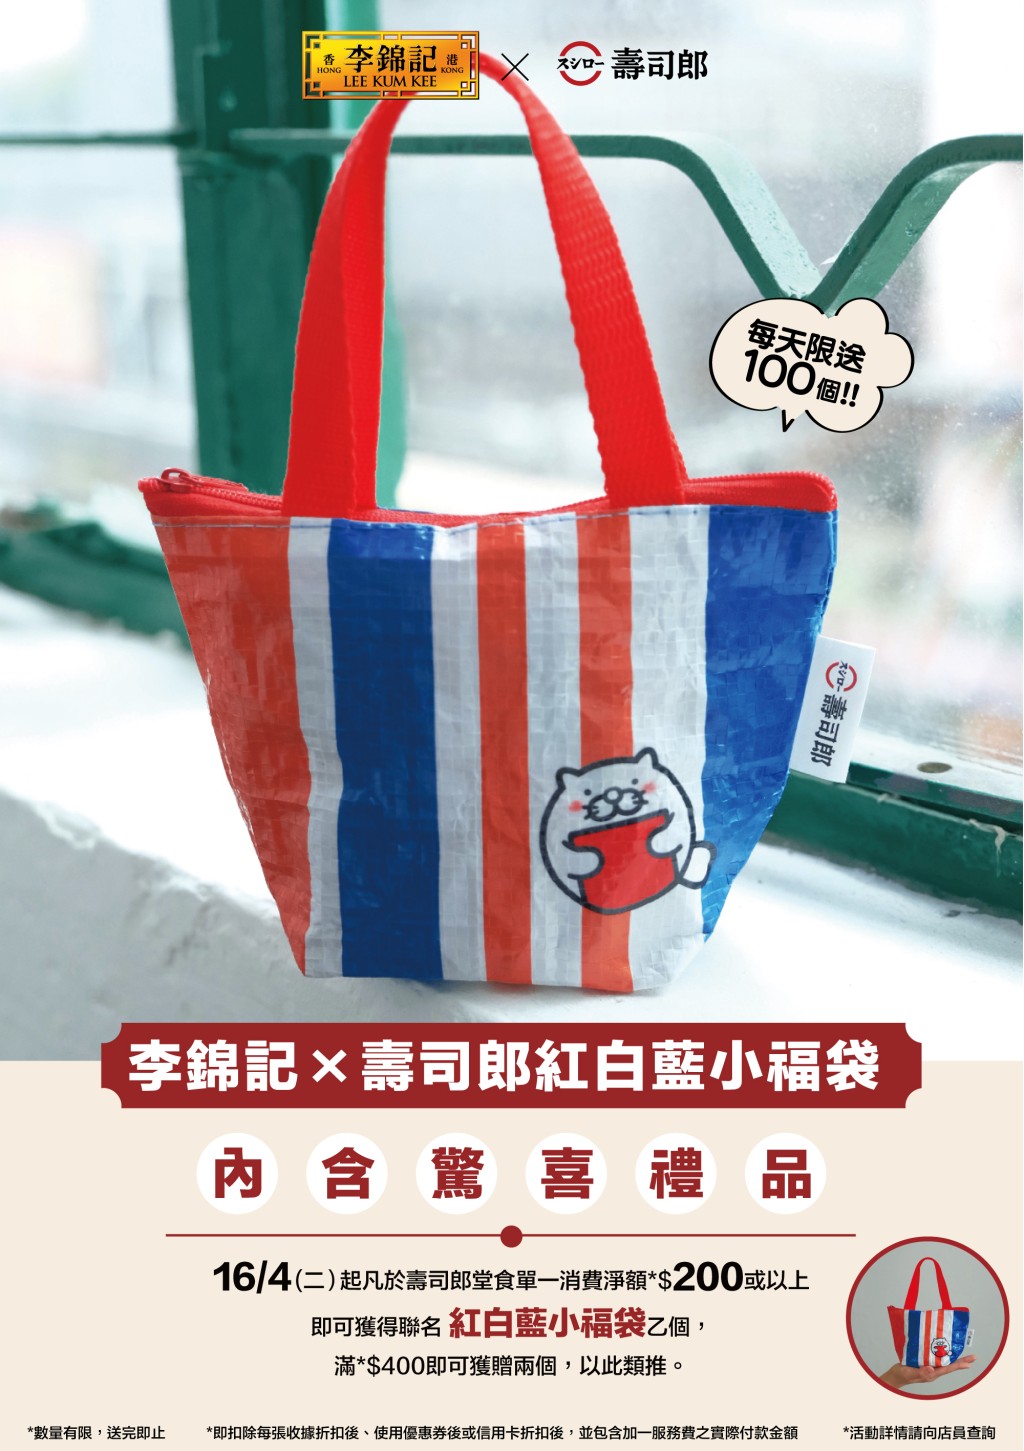 另外於4月16日起於壽司郎消費滿港幣$200或以上，即可獲贈壽司郎x李錦記紅白藍小福袋一個，內含李錦記醬料，大家要注意數量有限，送完即止。